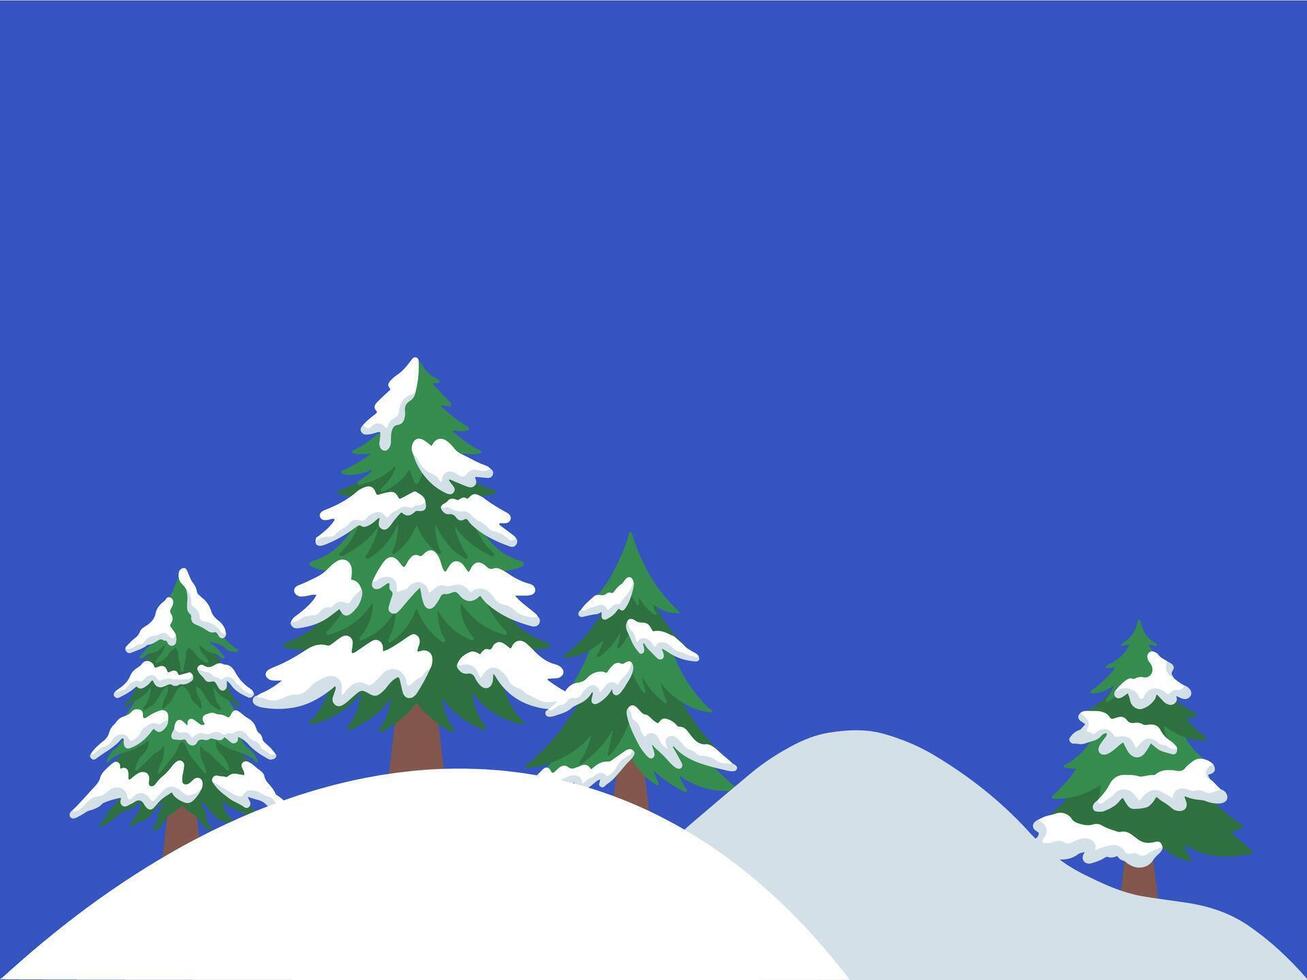 Kerstmis boom kader achtergrond illustratie vector